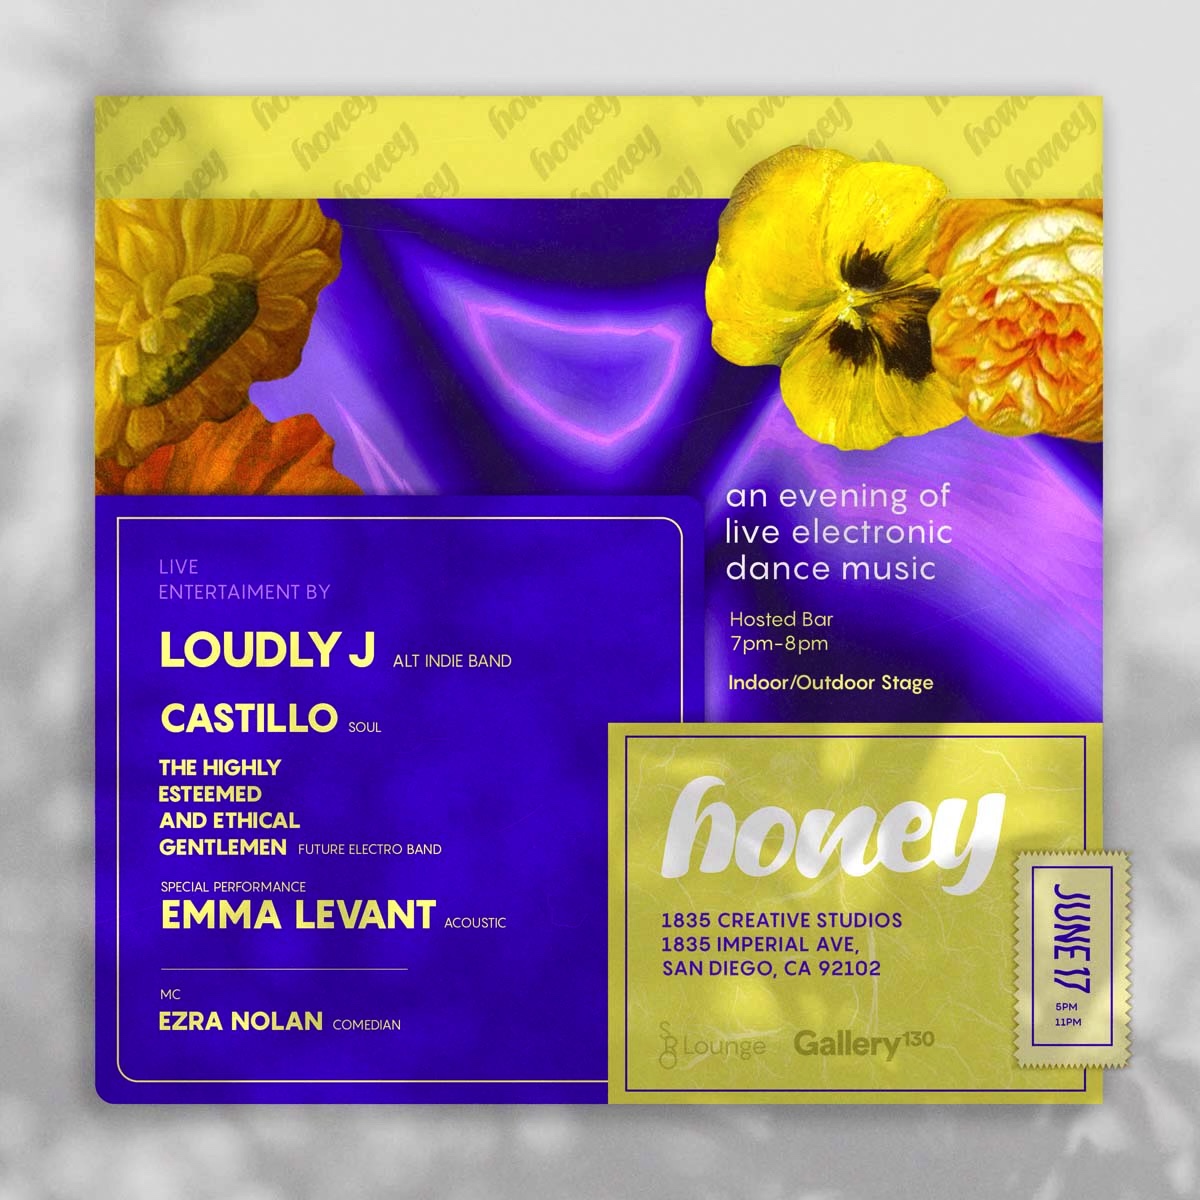 Honey - 07/17/21